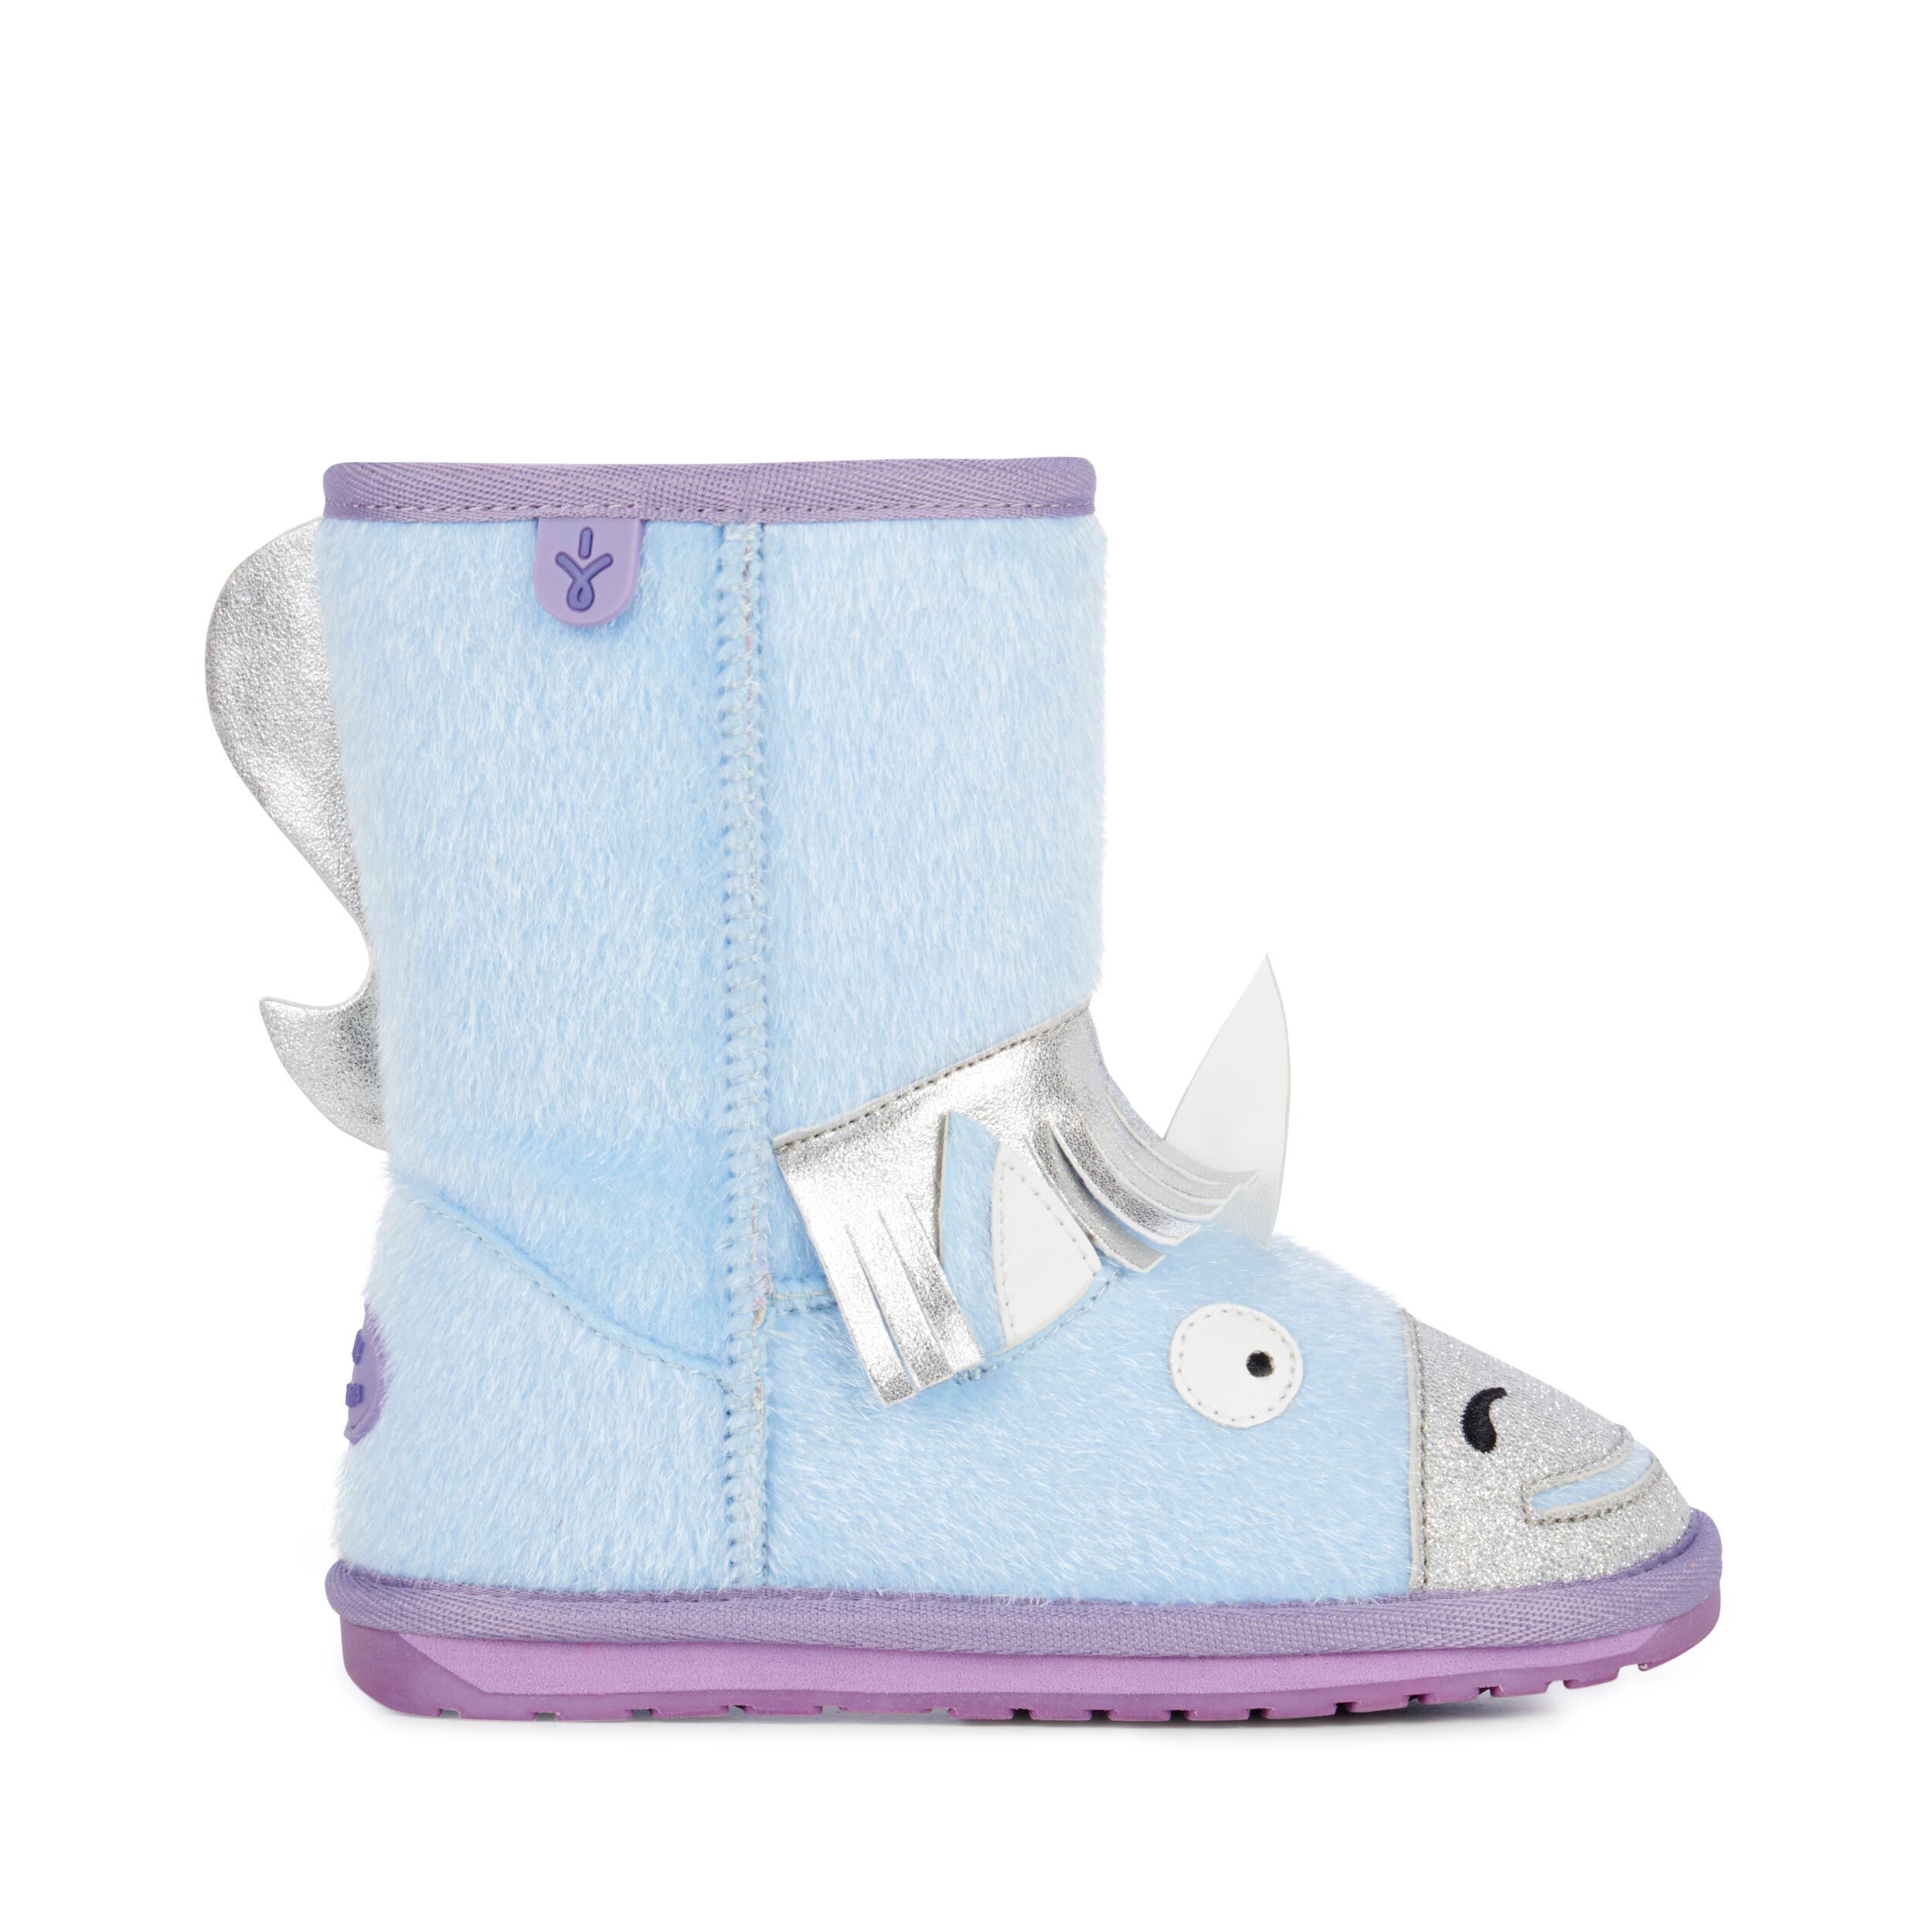 EMU Australia Unicorn Kinder Mädchen Stiefel Blau Schnür-Stiefelette Winter 